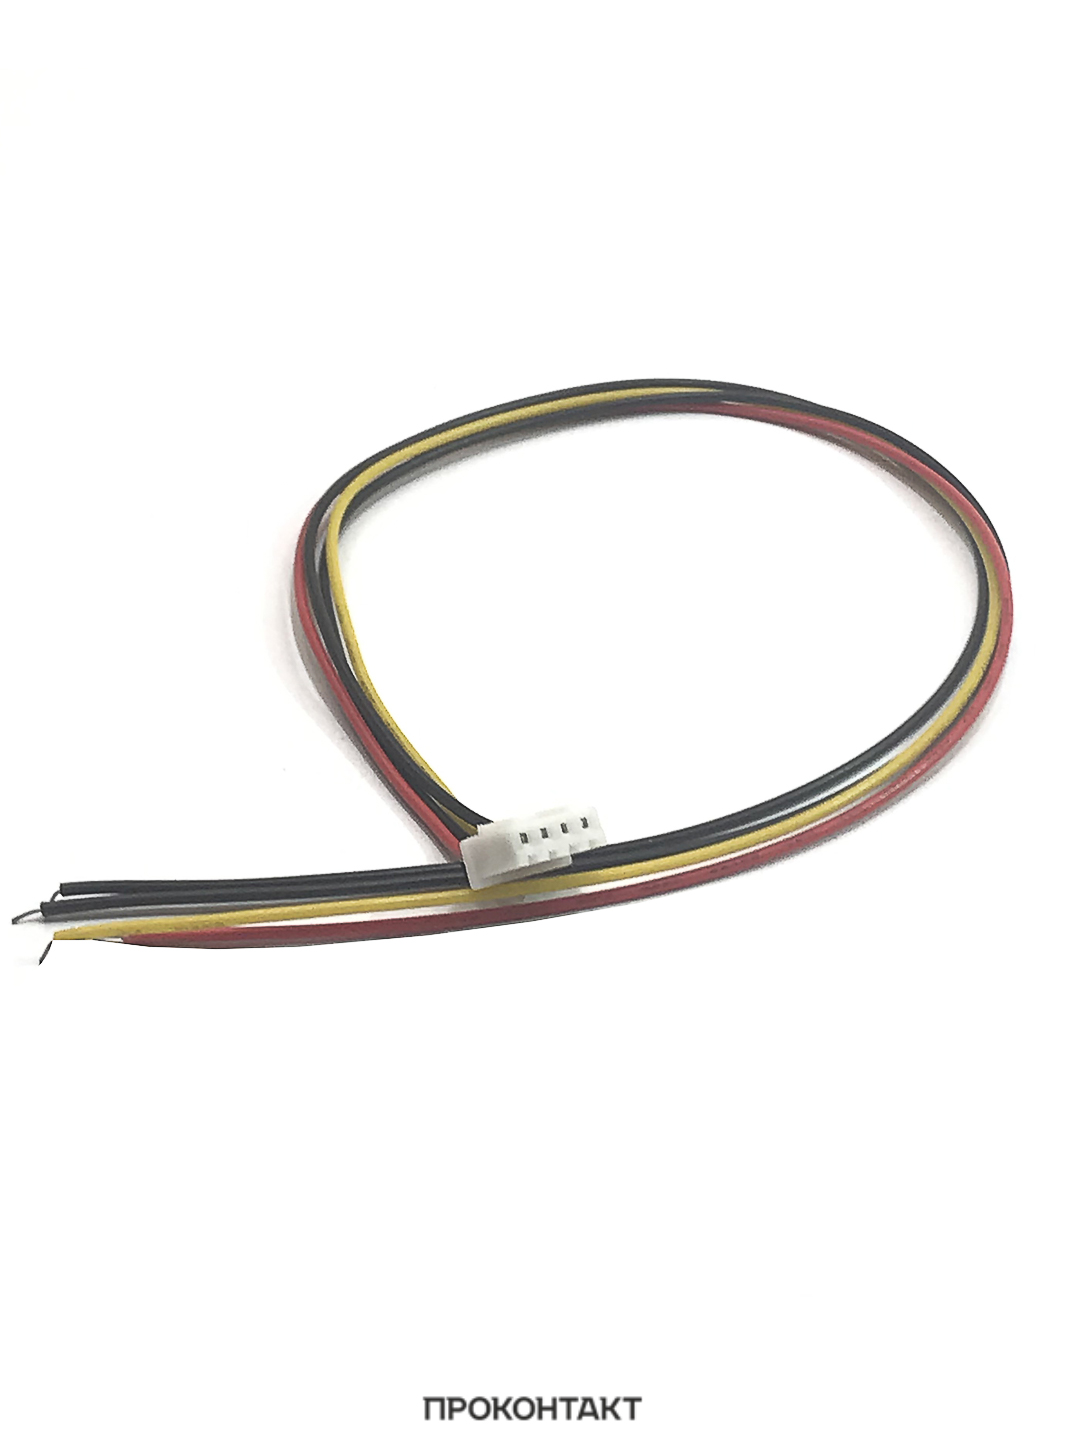 Купить Межплатный кабель XH2.54 AWG26 300мм  4pin в Челябинске